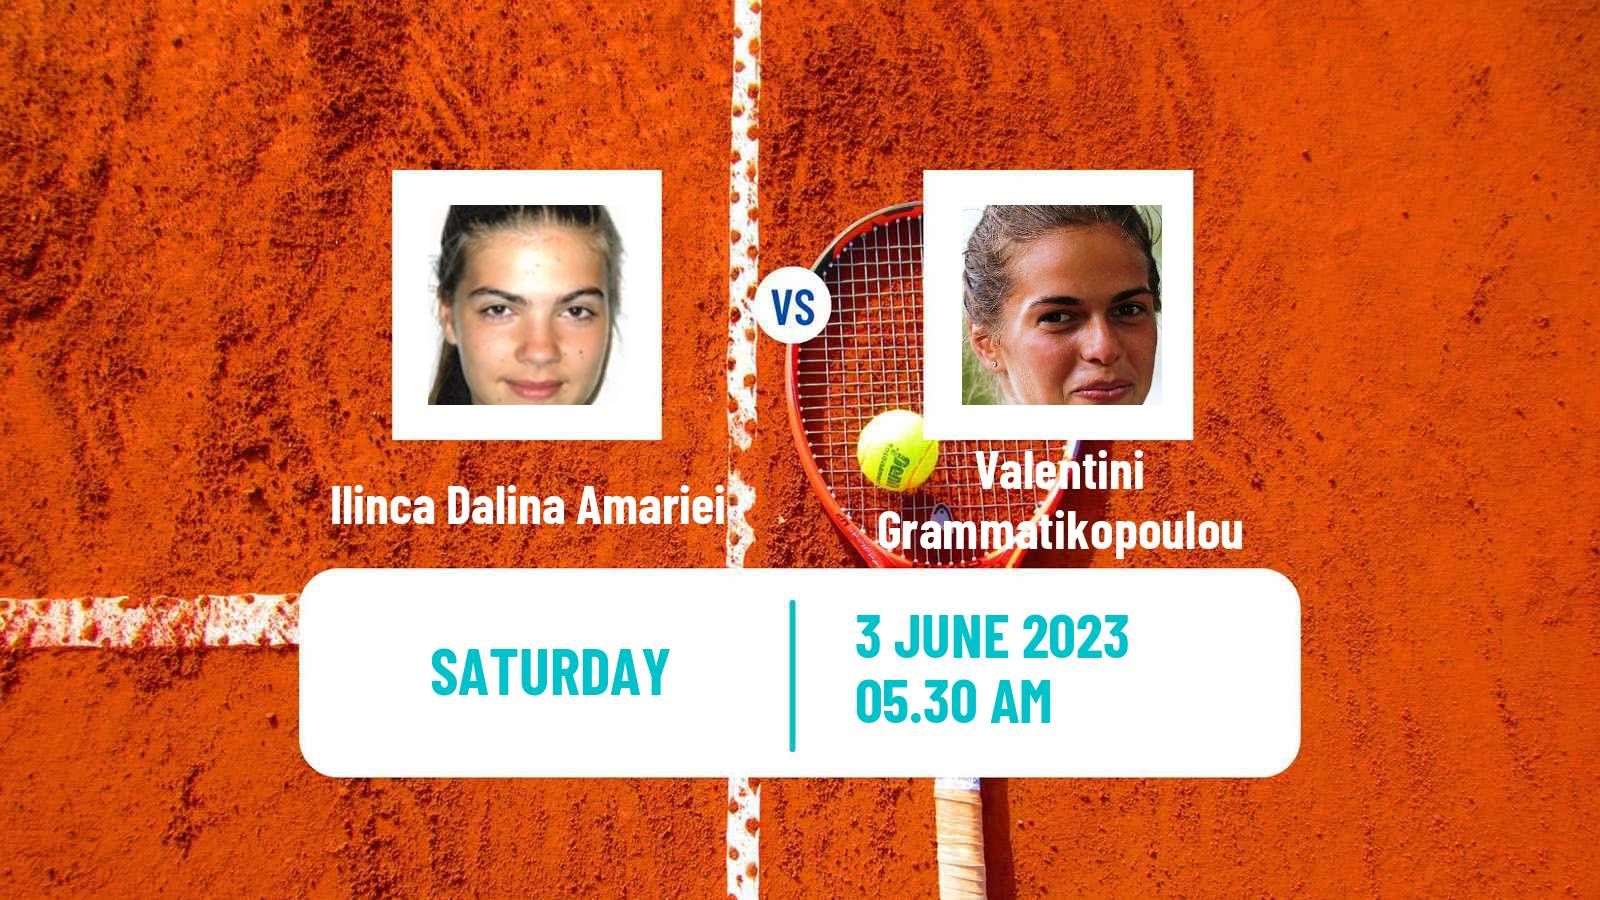 Tennis ITF W40 Otocec 2 Women Ilinca Dalina Amariei - Valentini Grammatikopoulou